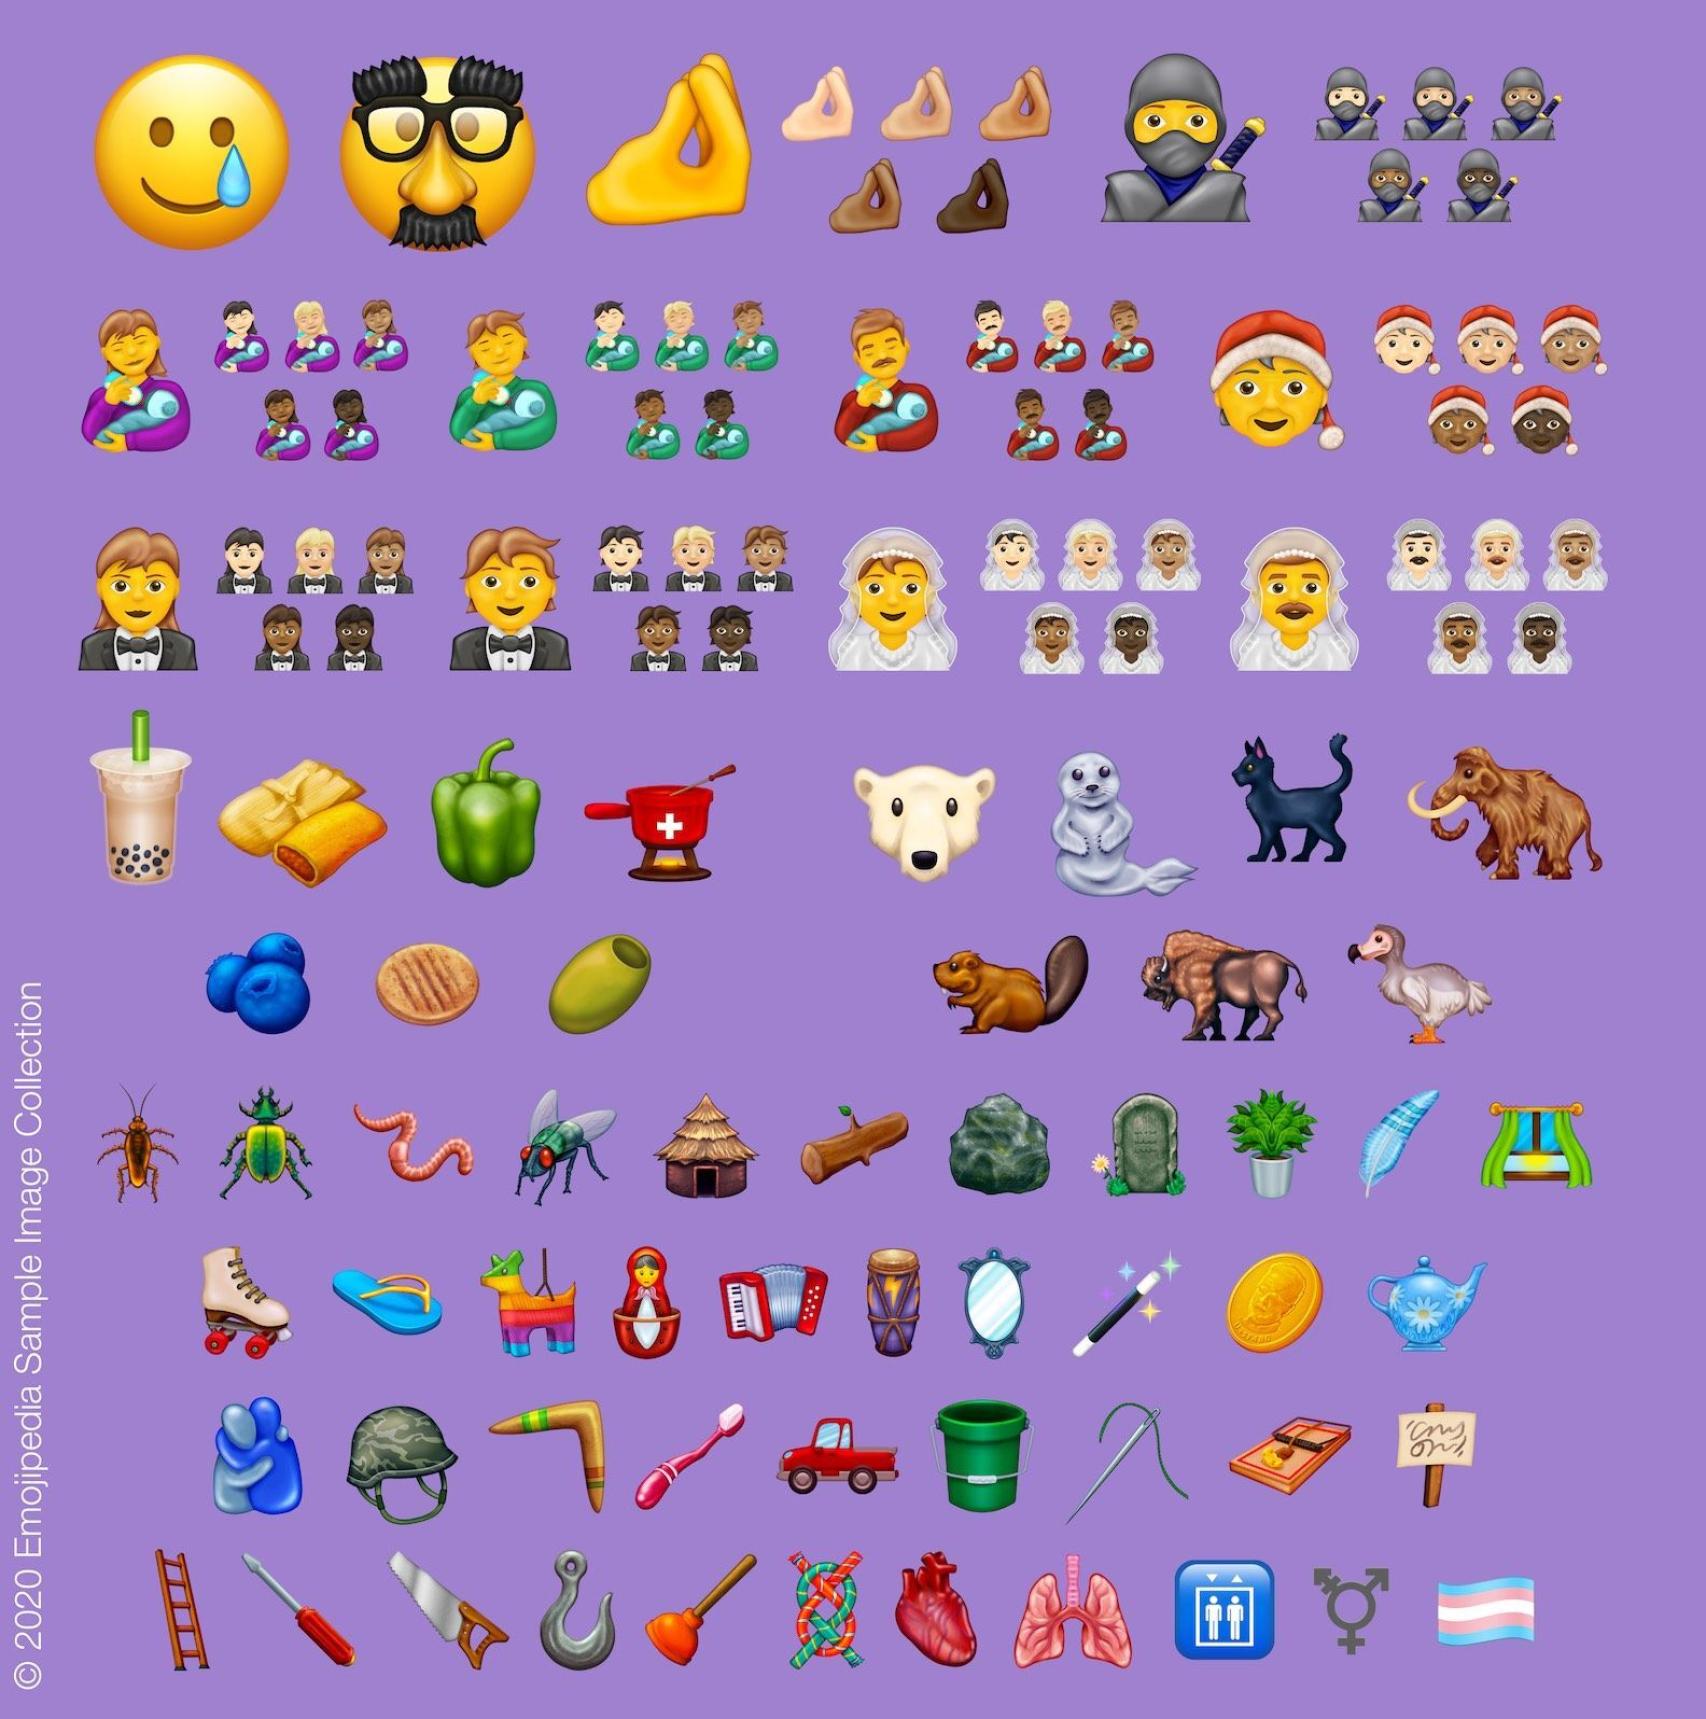 Lista completa de nuevos emoji para el 2020